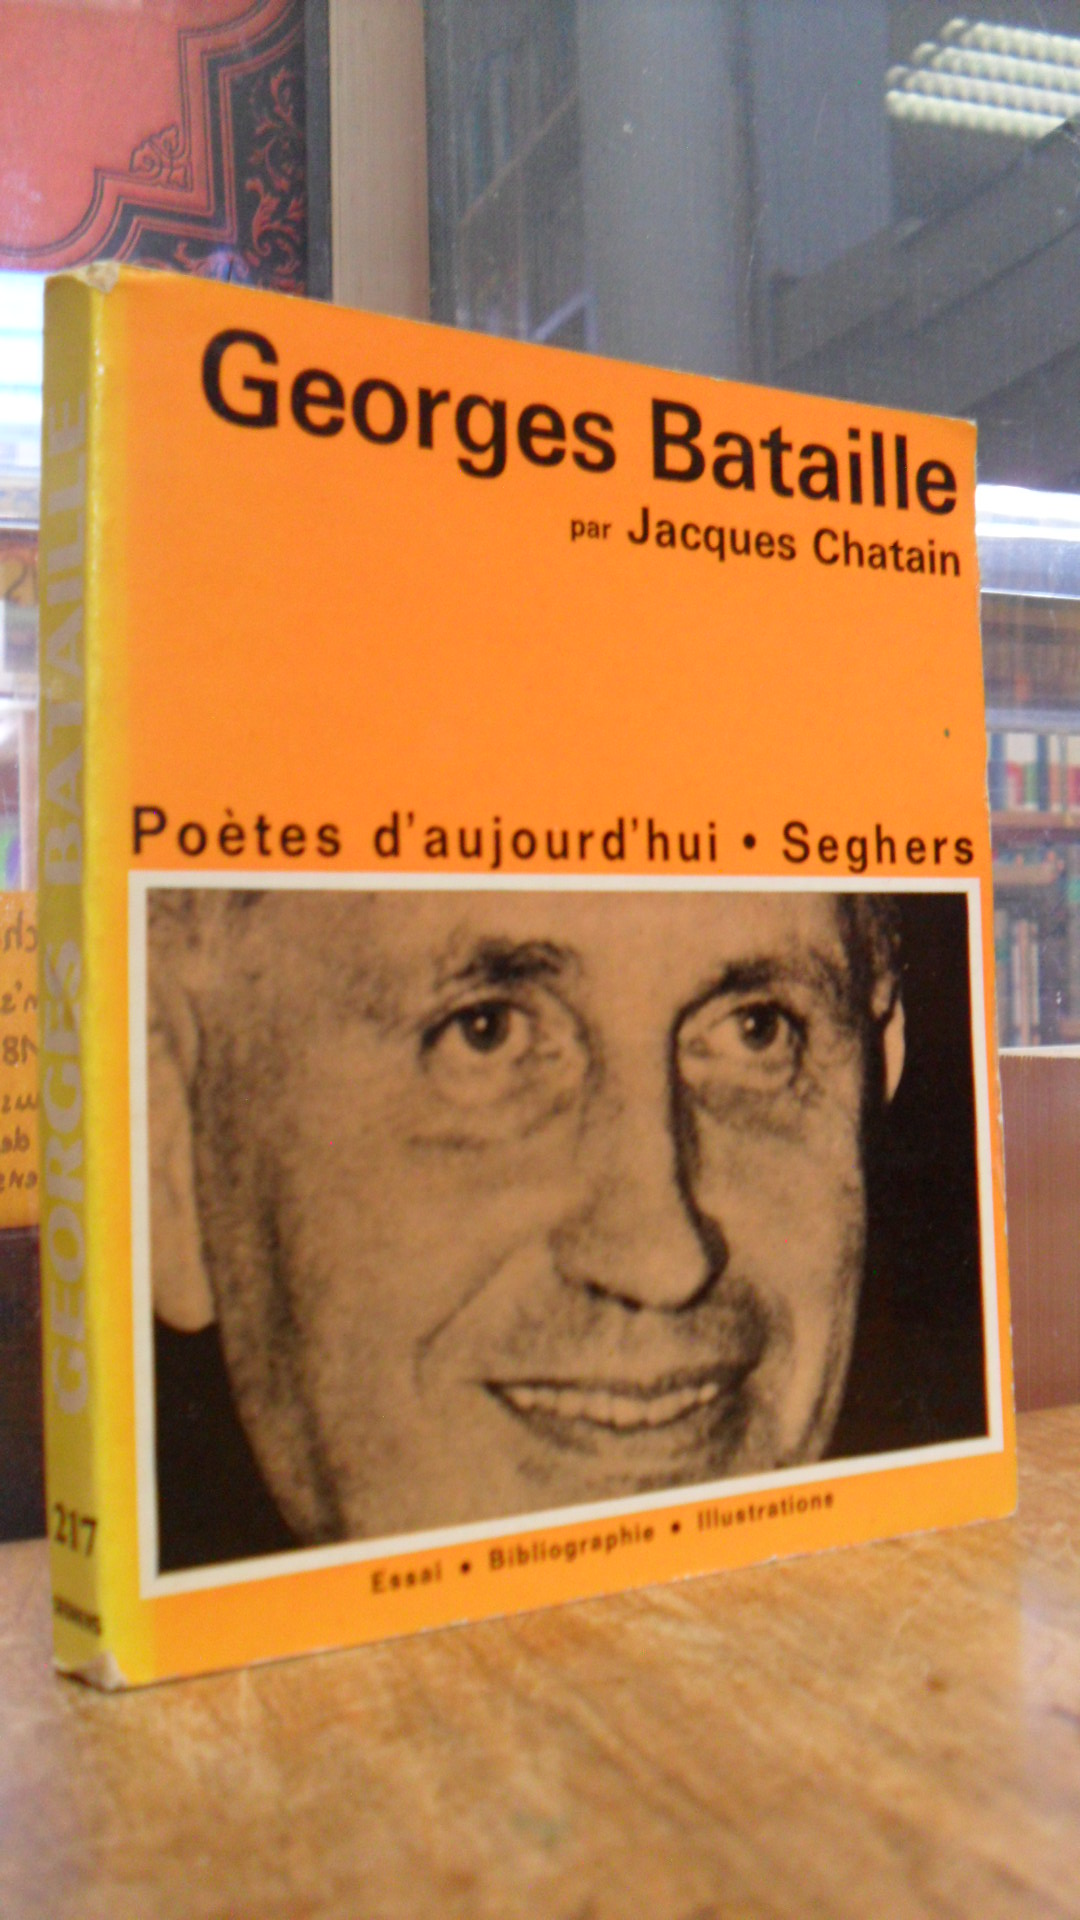 Chatain, Georges Bataille – Une étude, une bibliographie, des illustrations,